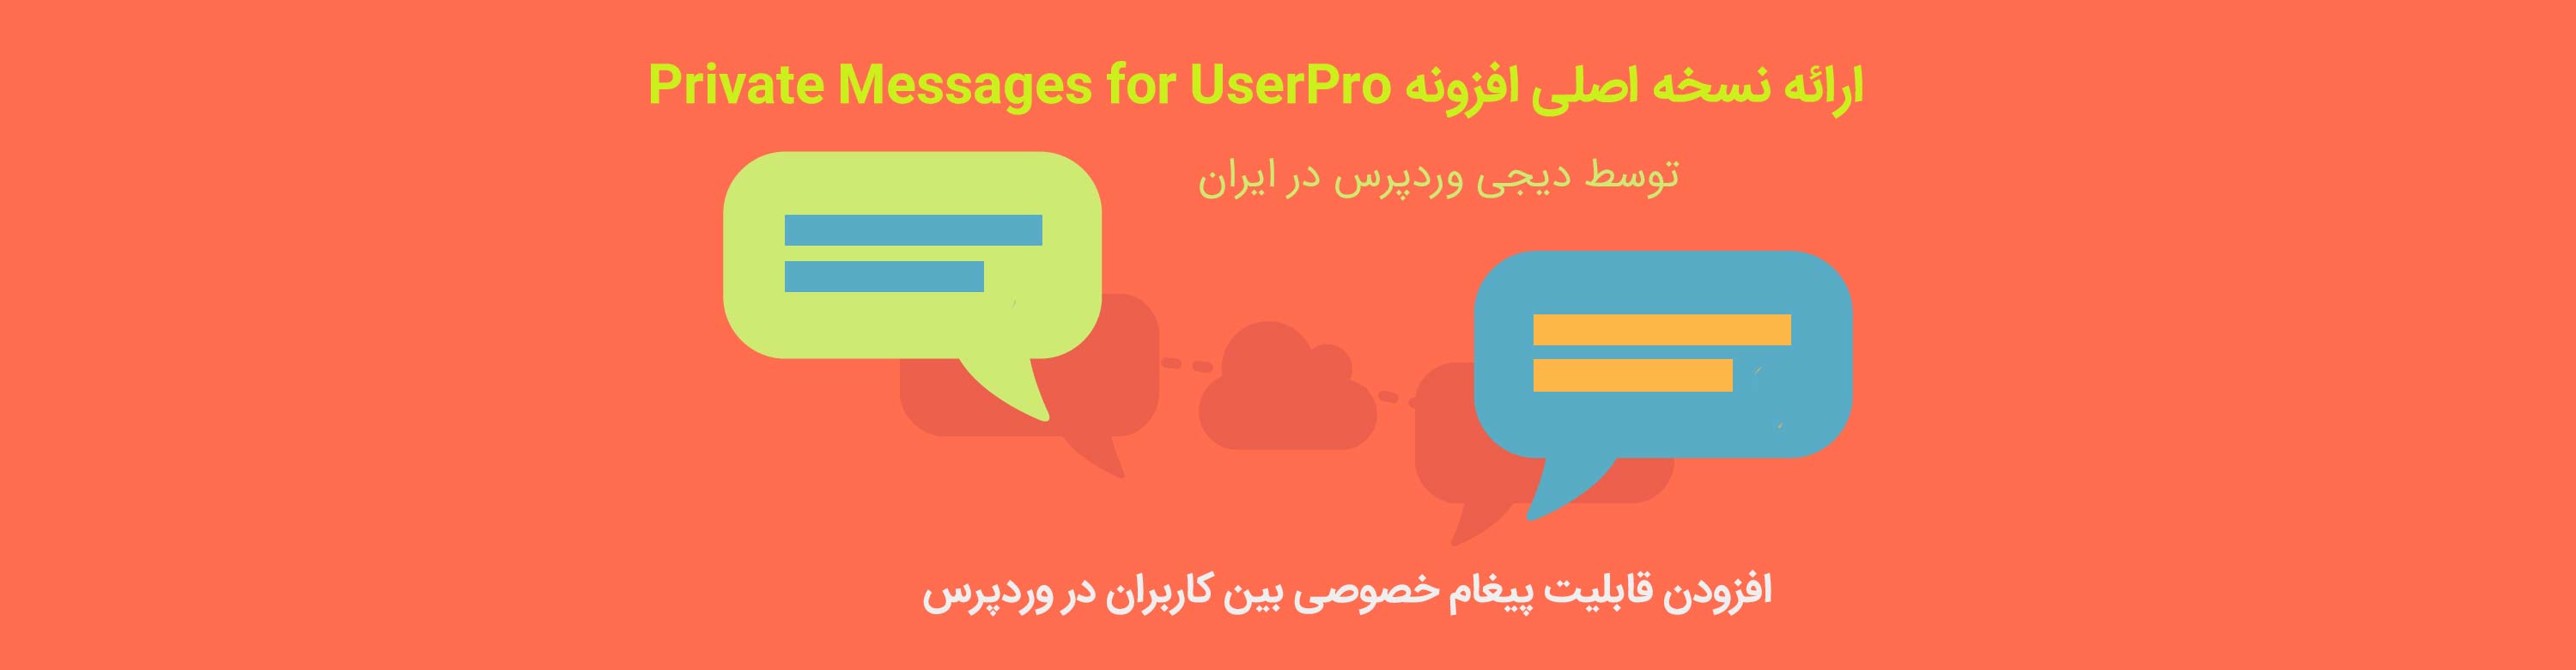 افزونه وردپرس Private Messages for UserPro